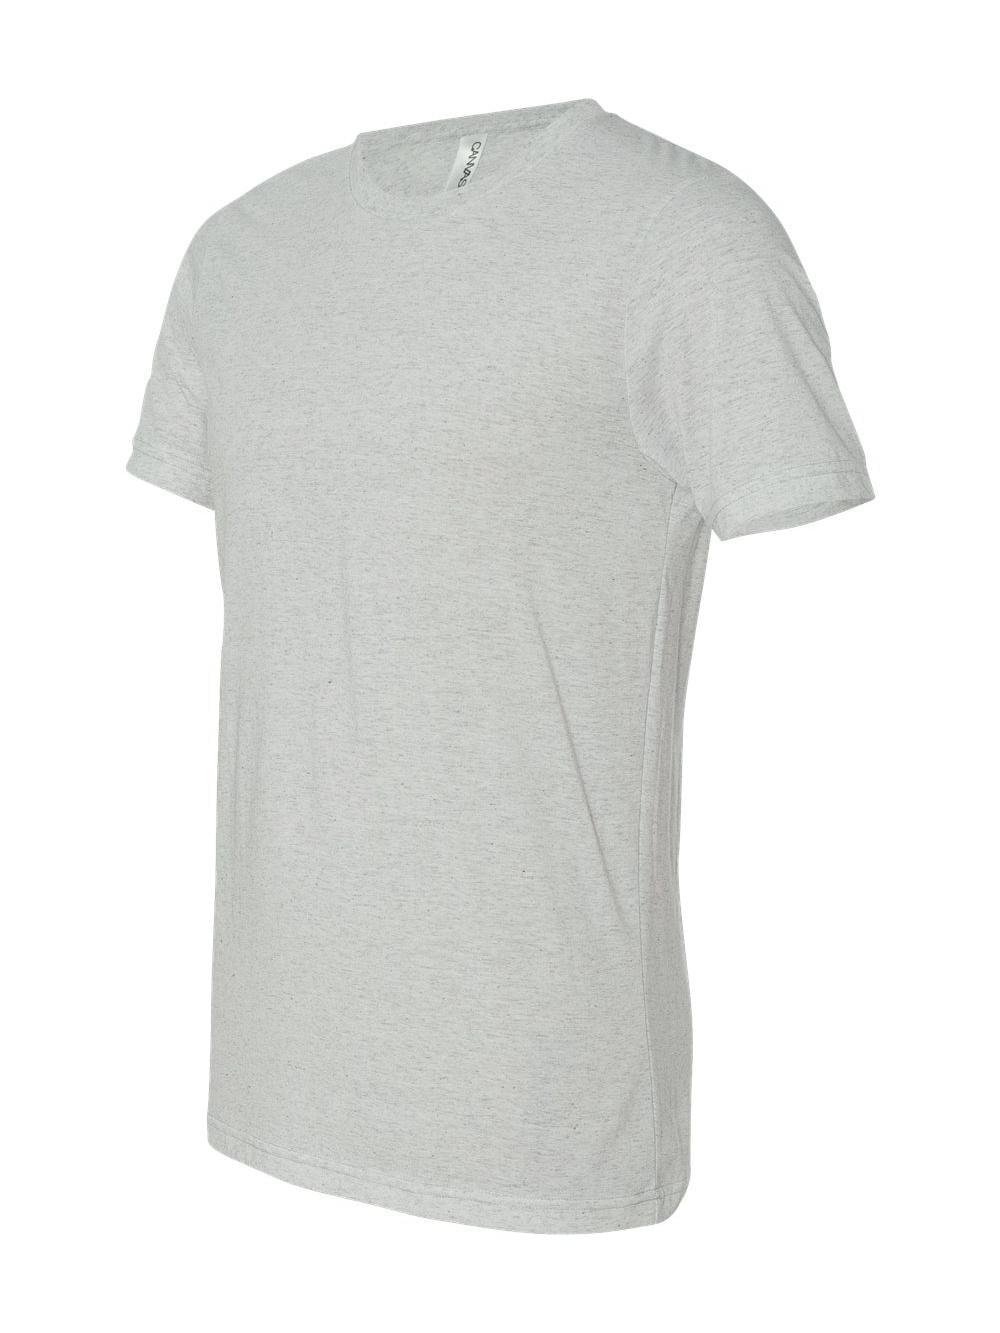 Unisex Triblend TRIBLEND - OATMEAL - 2XL T-Shirt